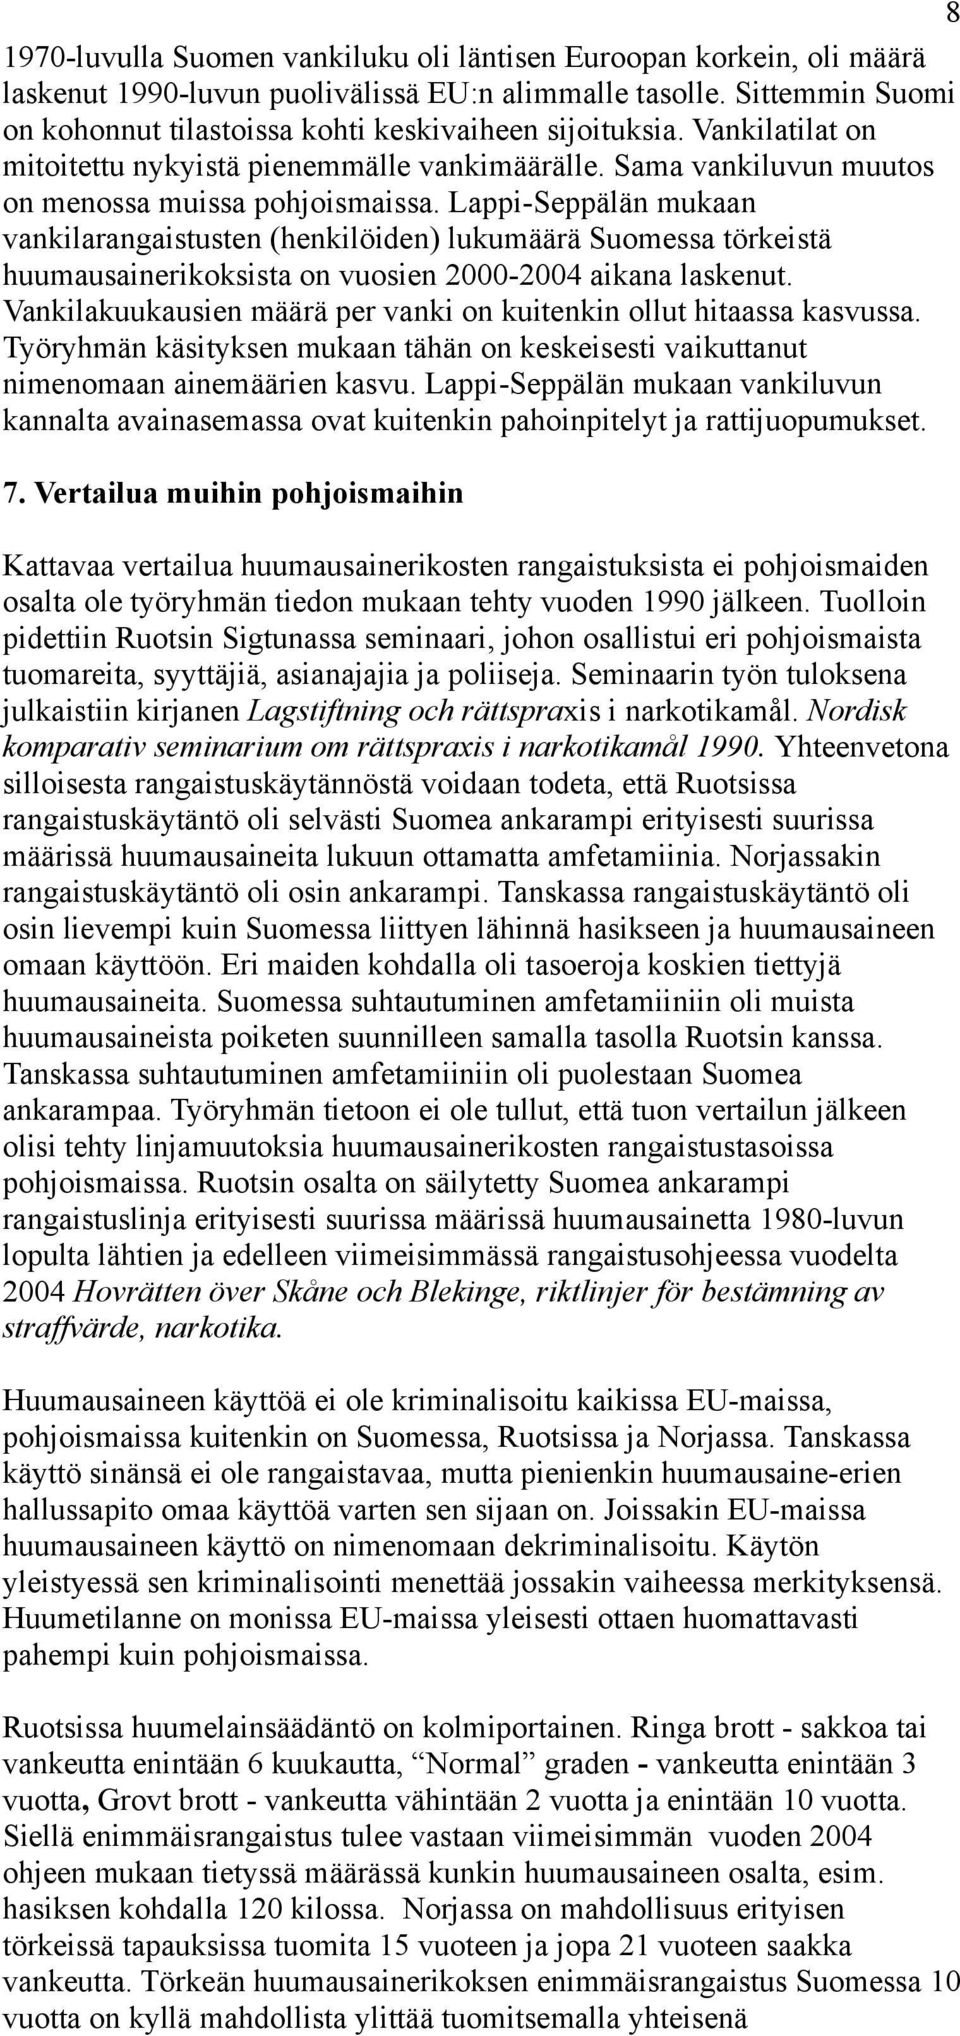 Lappi-Seppälän mukaan vankilarangaistusten (henkilöiden) lukumäärä Suomessa törkeistä huumausainerikoksista on vuosien 2000-2004 aikana laskenut.